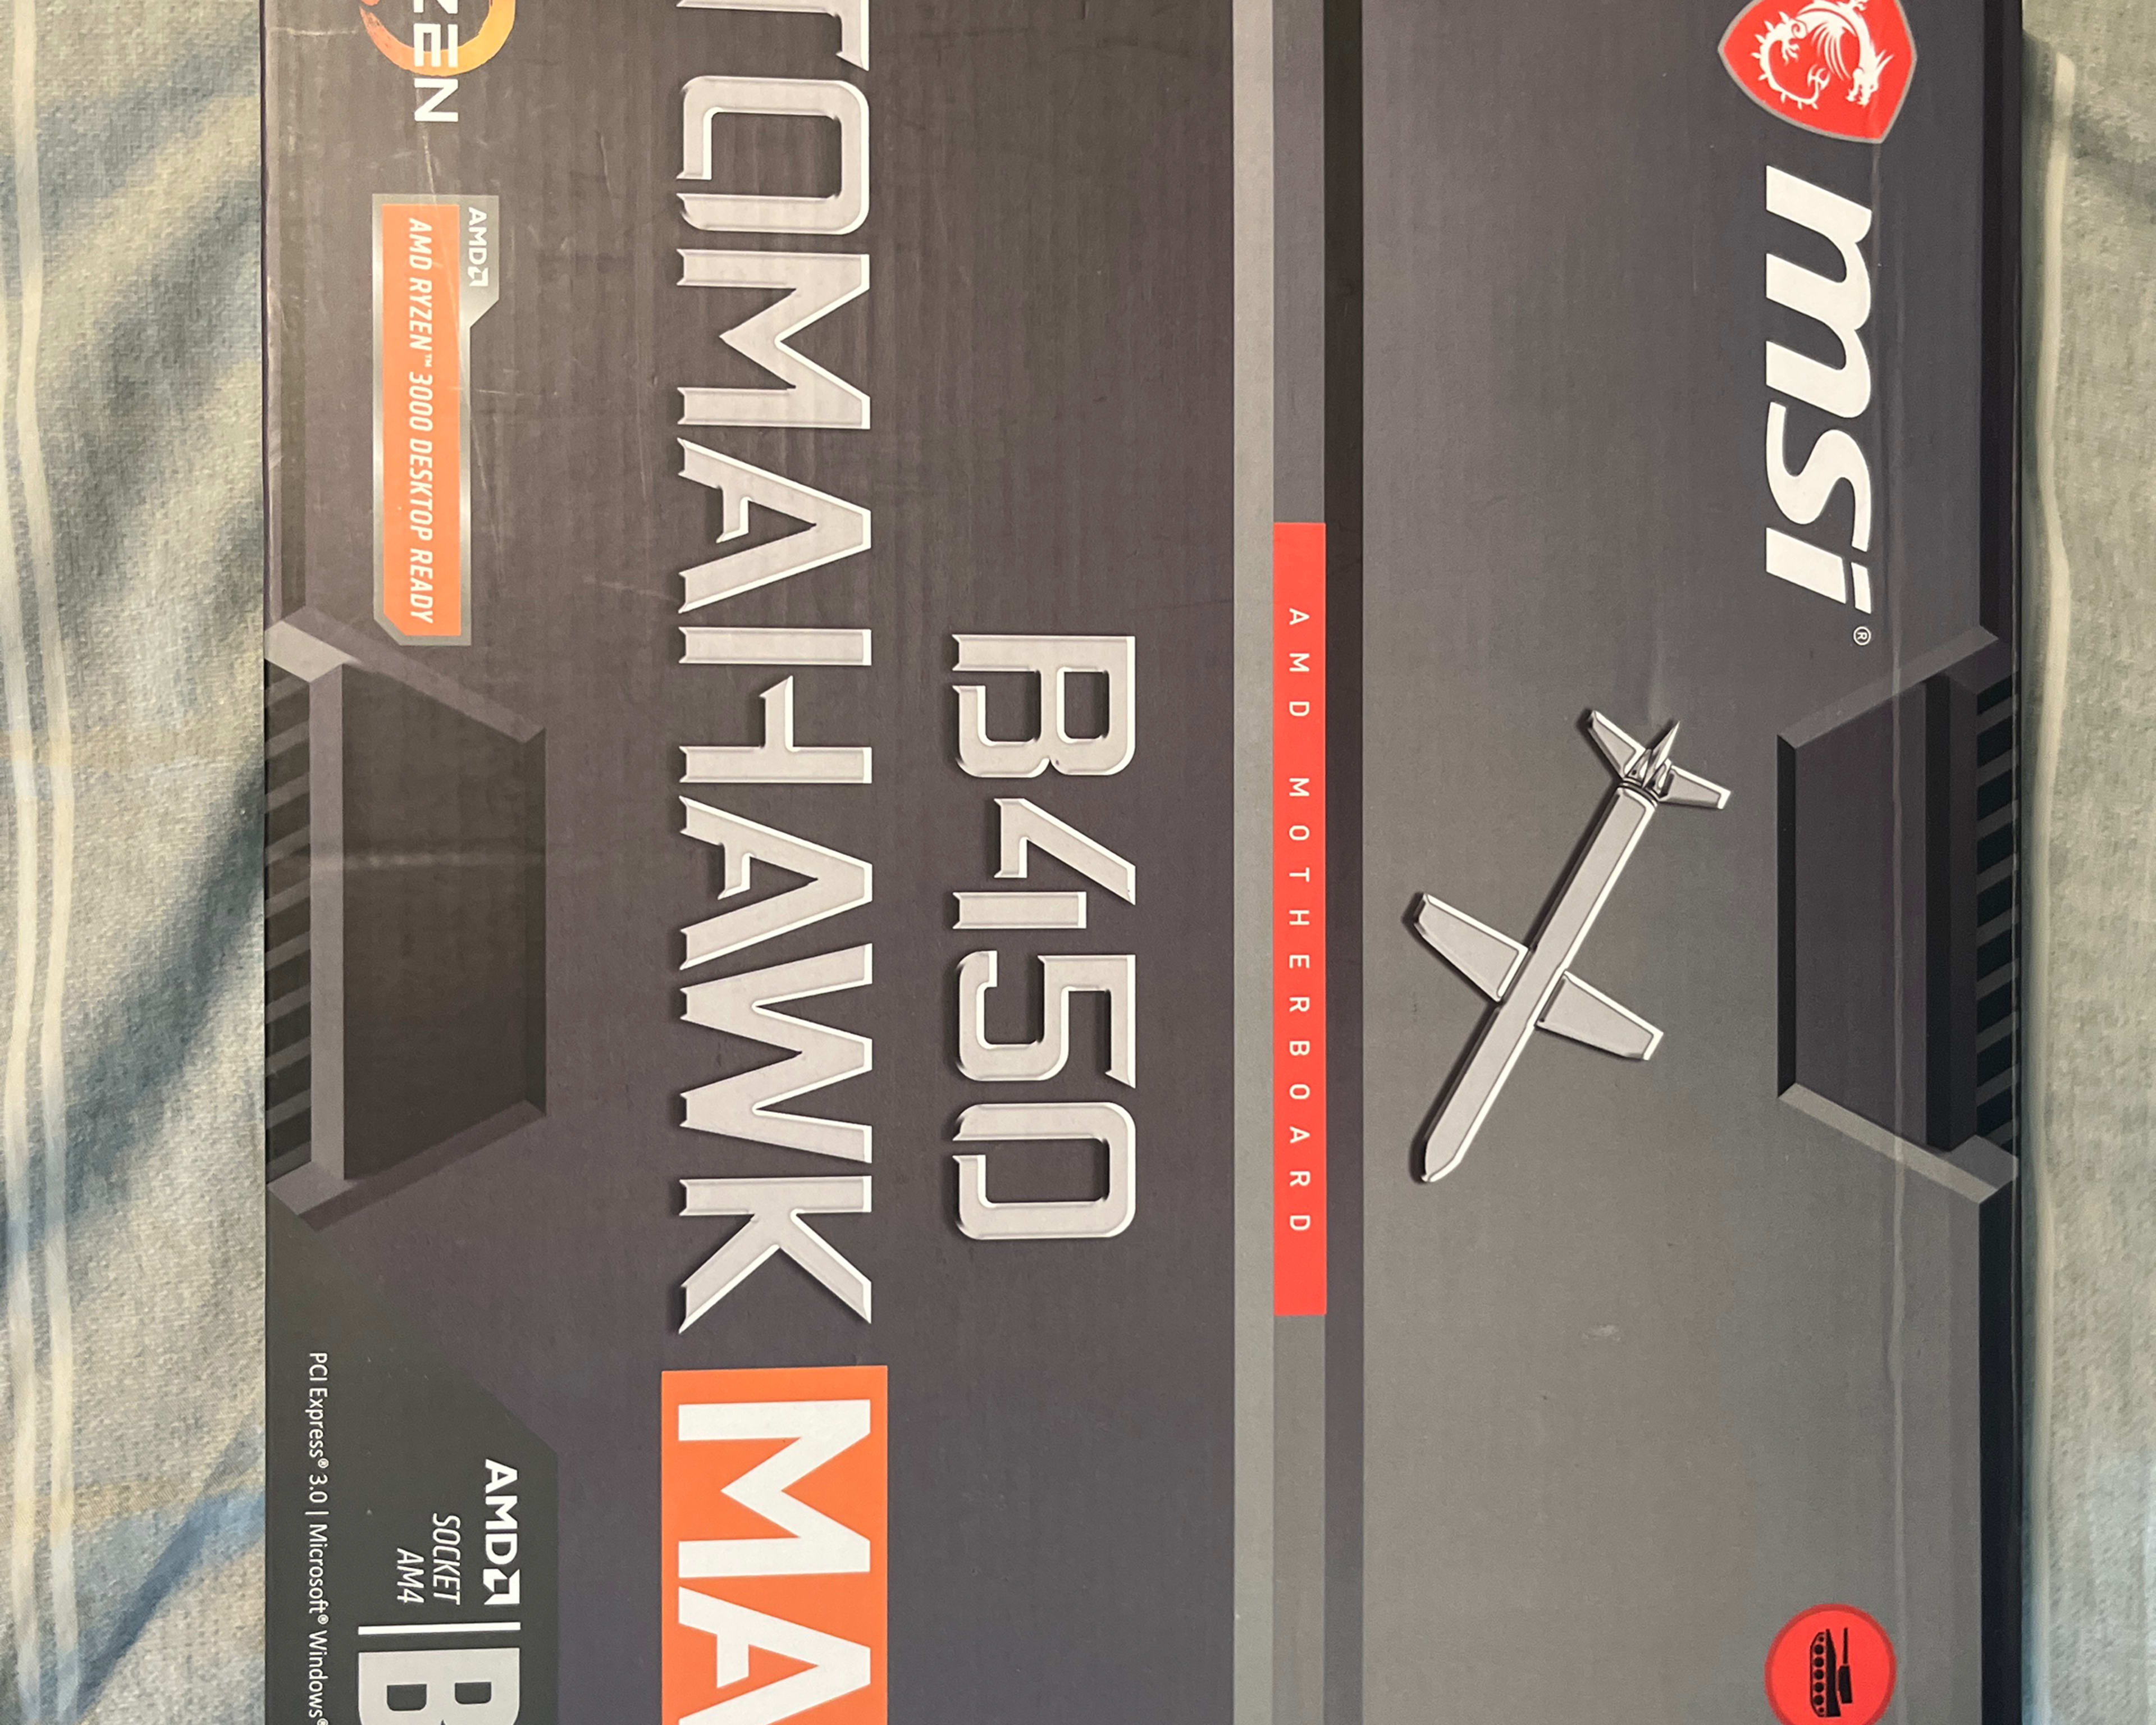 MSI B450 Tomahawk Max - AM4